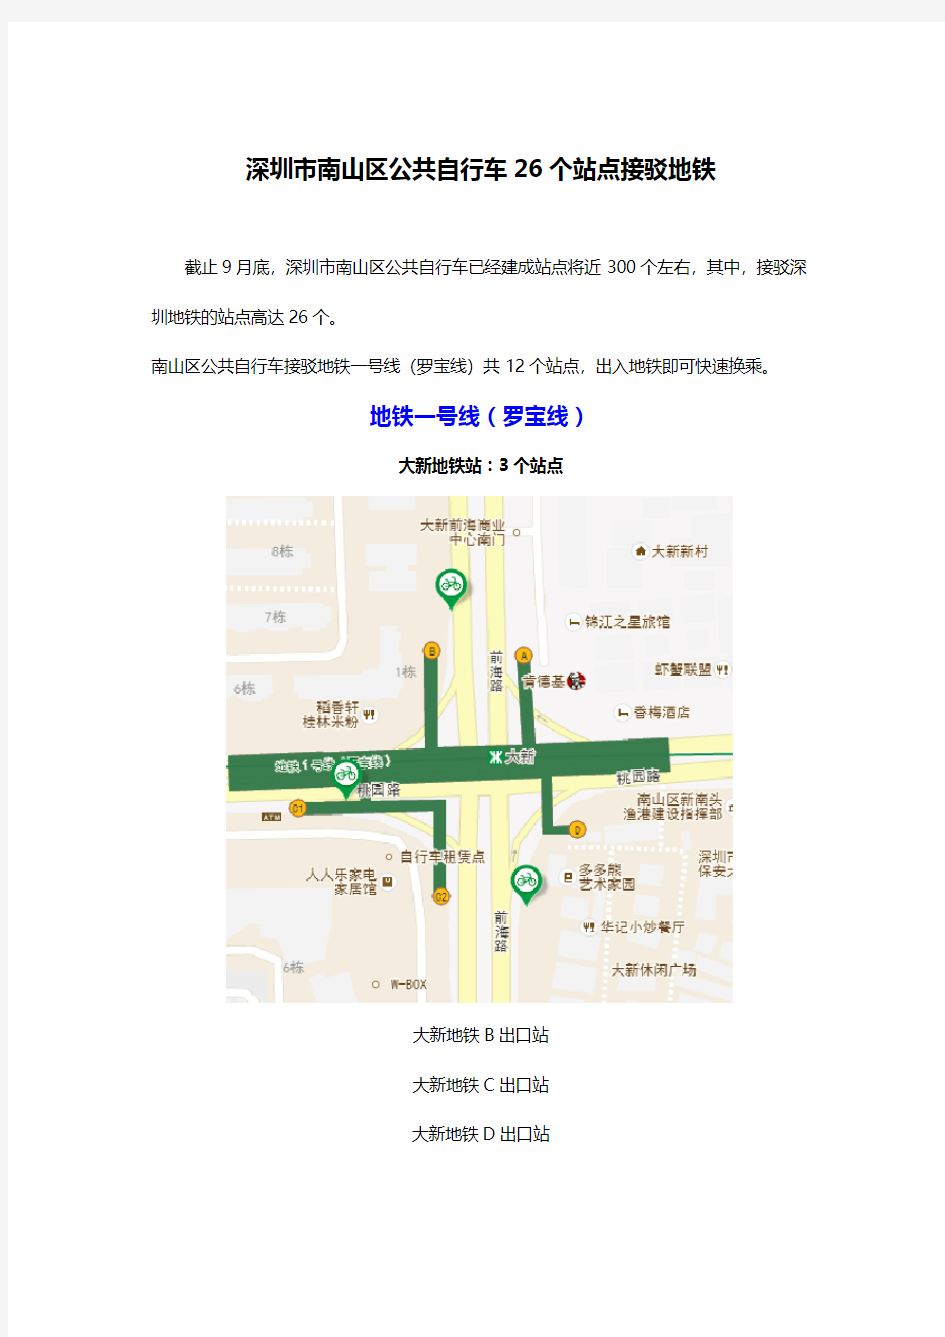 深圳市南山区公共自行车26个站点接驳地铁